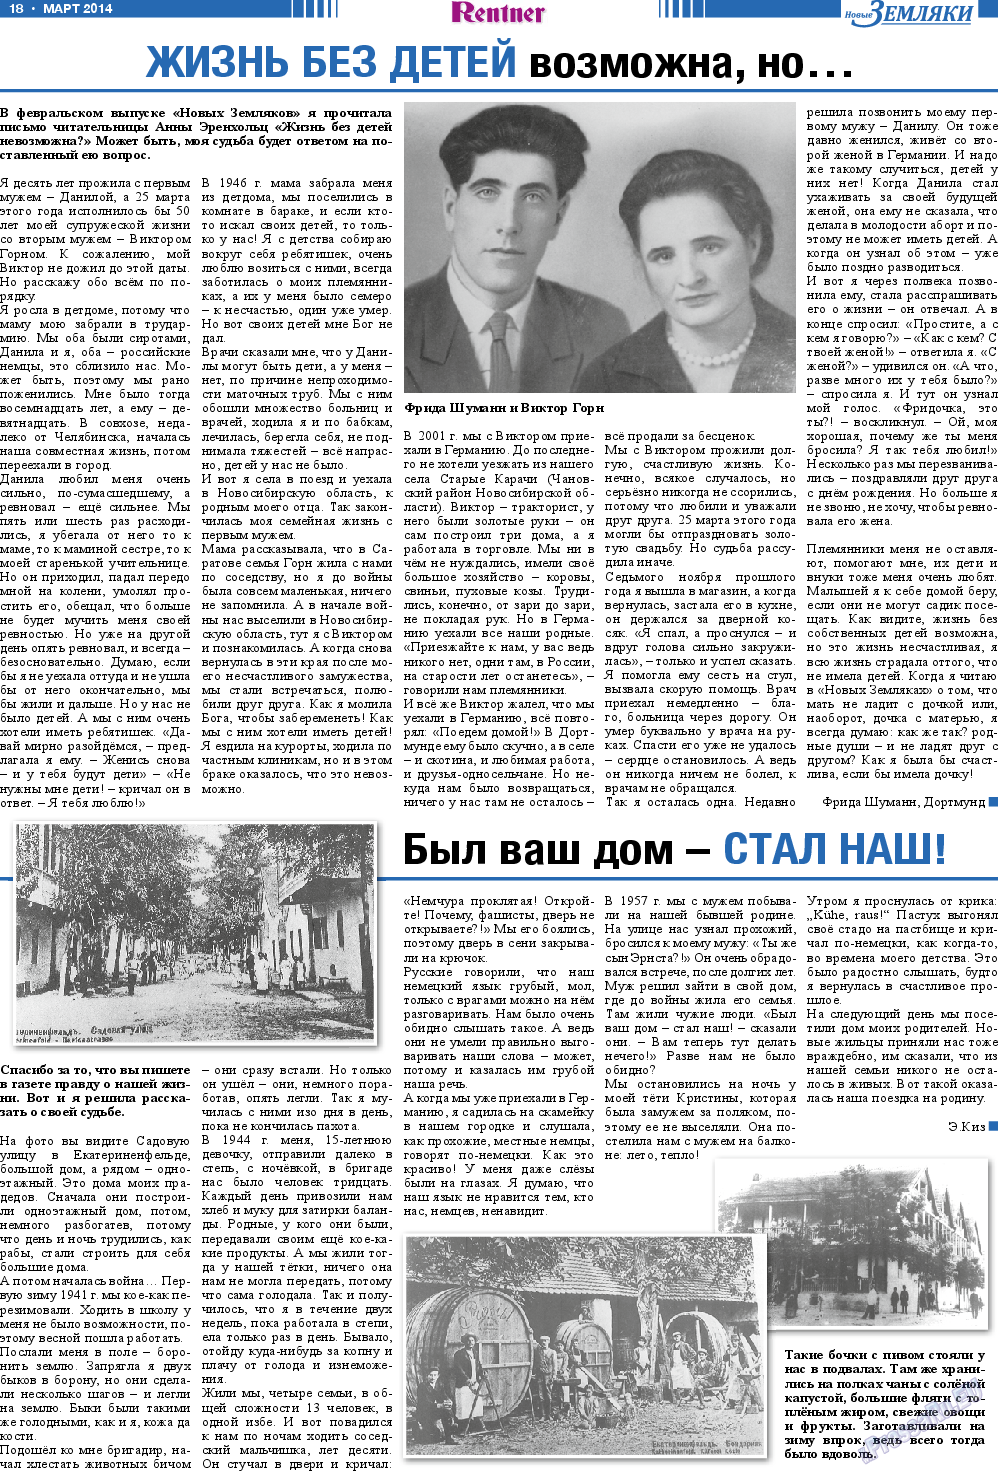 Новые Земляки, газета. 2014 №3 стр.18